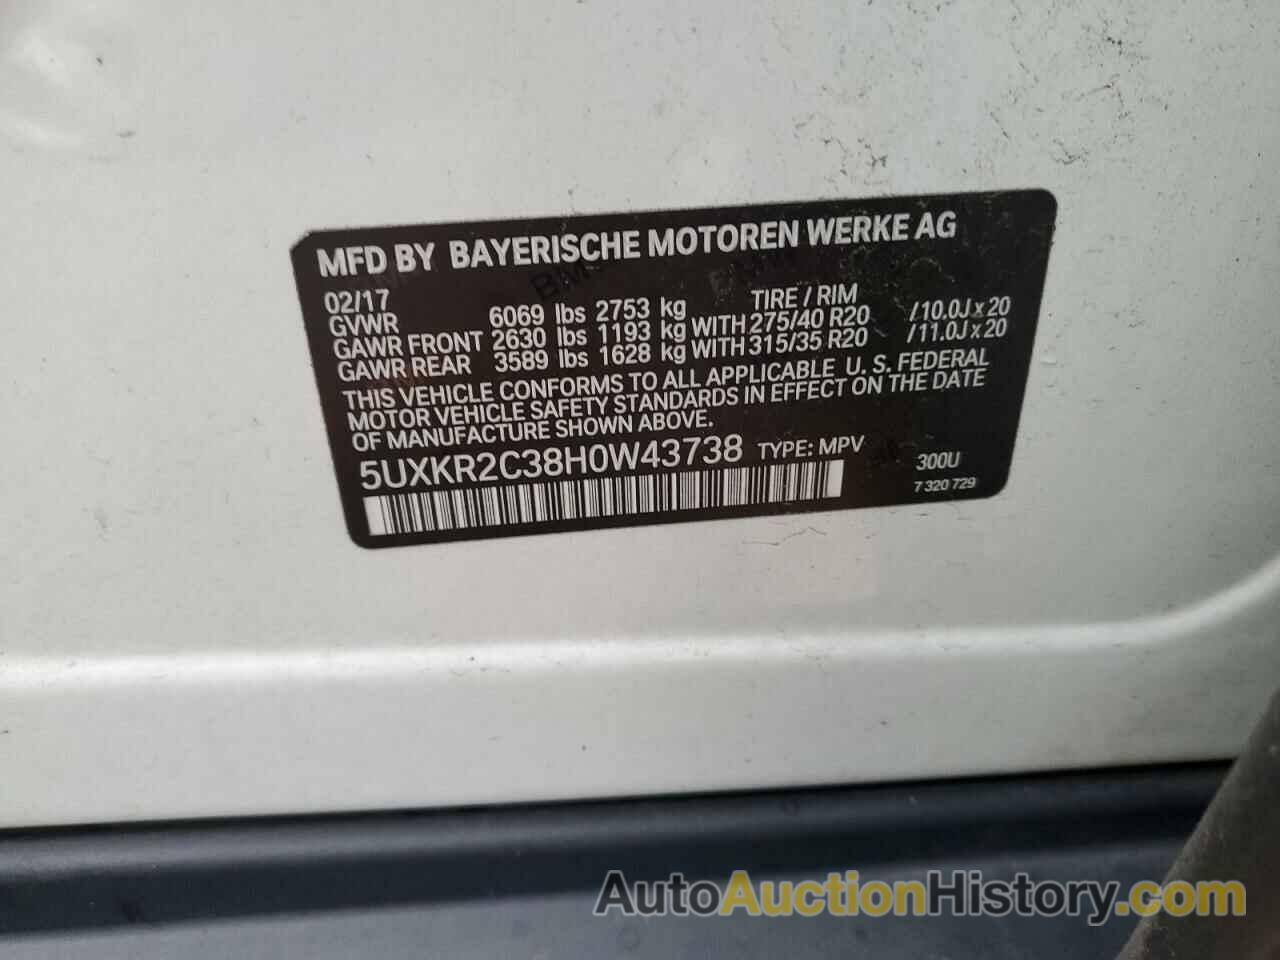 BMW X5 SDRIVE35I, 5UXKR2C38H0W43738